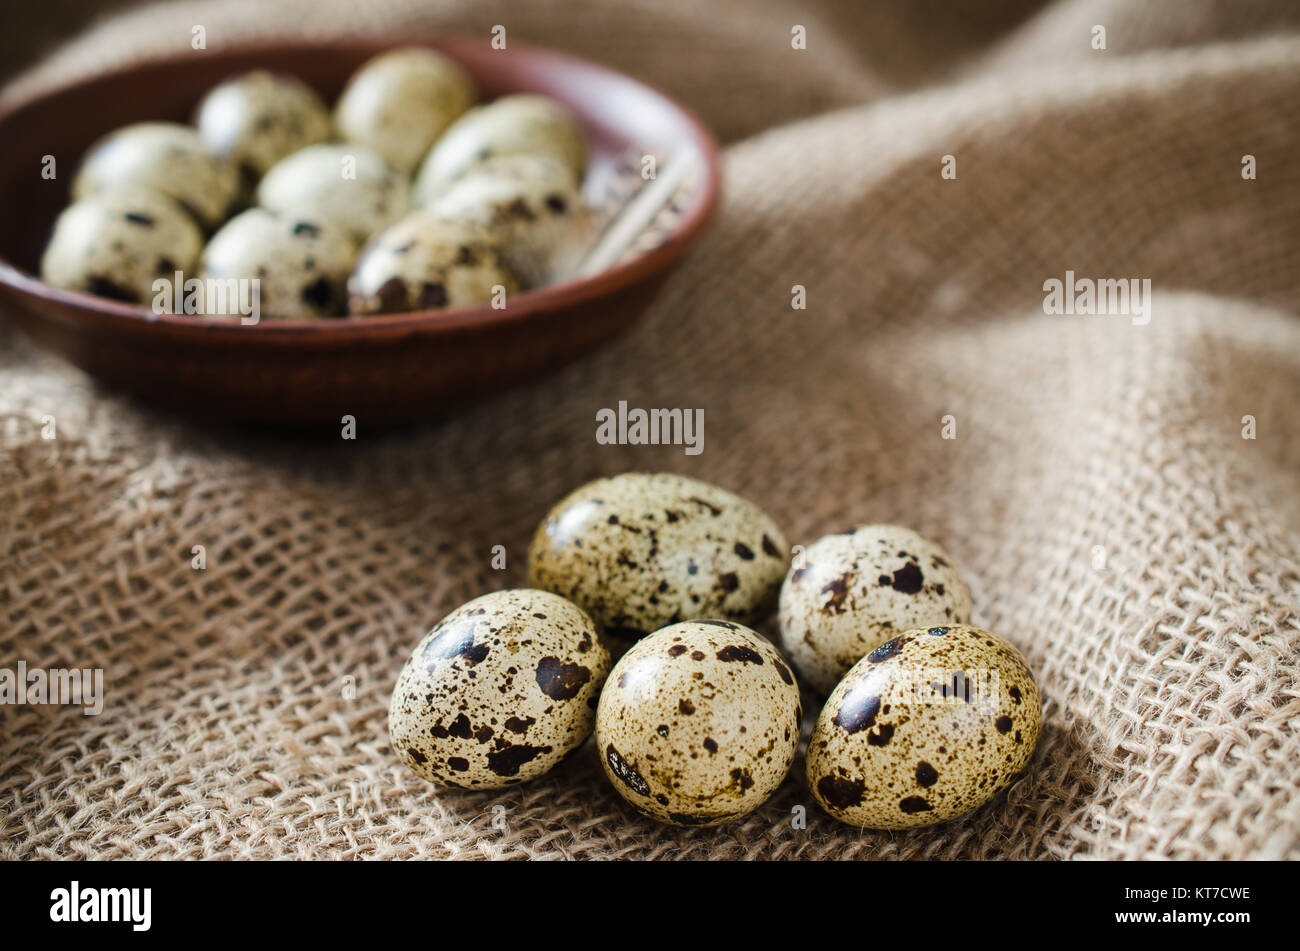 Fresh Organic Quail Eggs in a Ceramic Bowl. Stock Photo